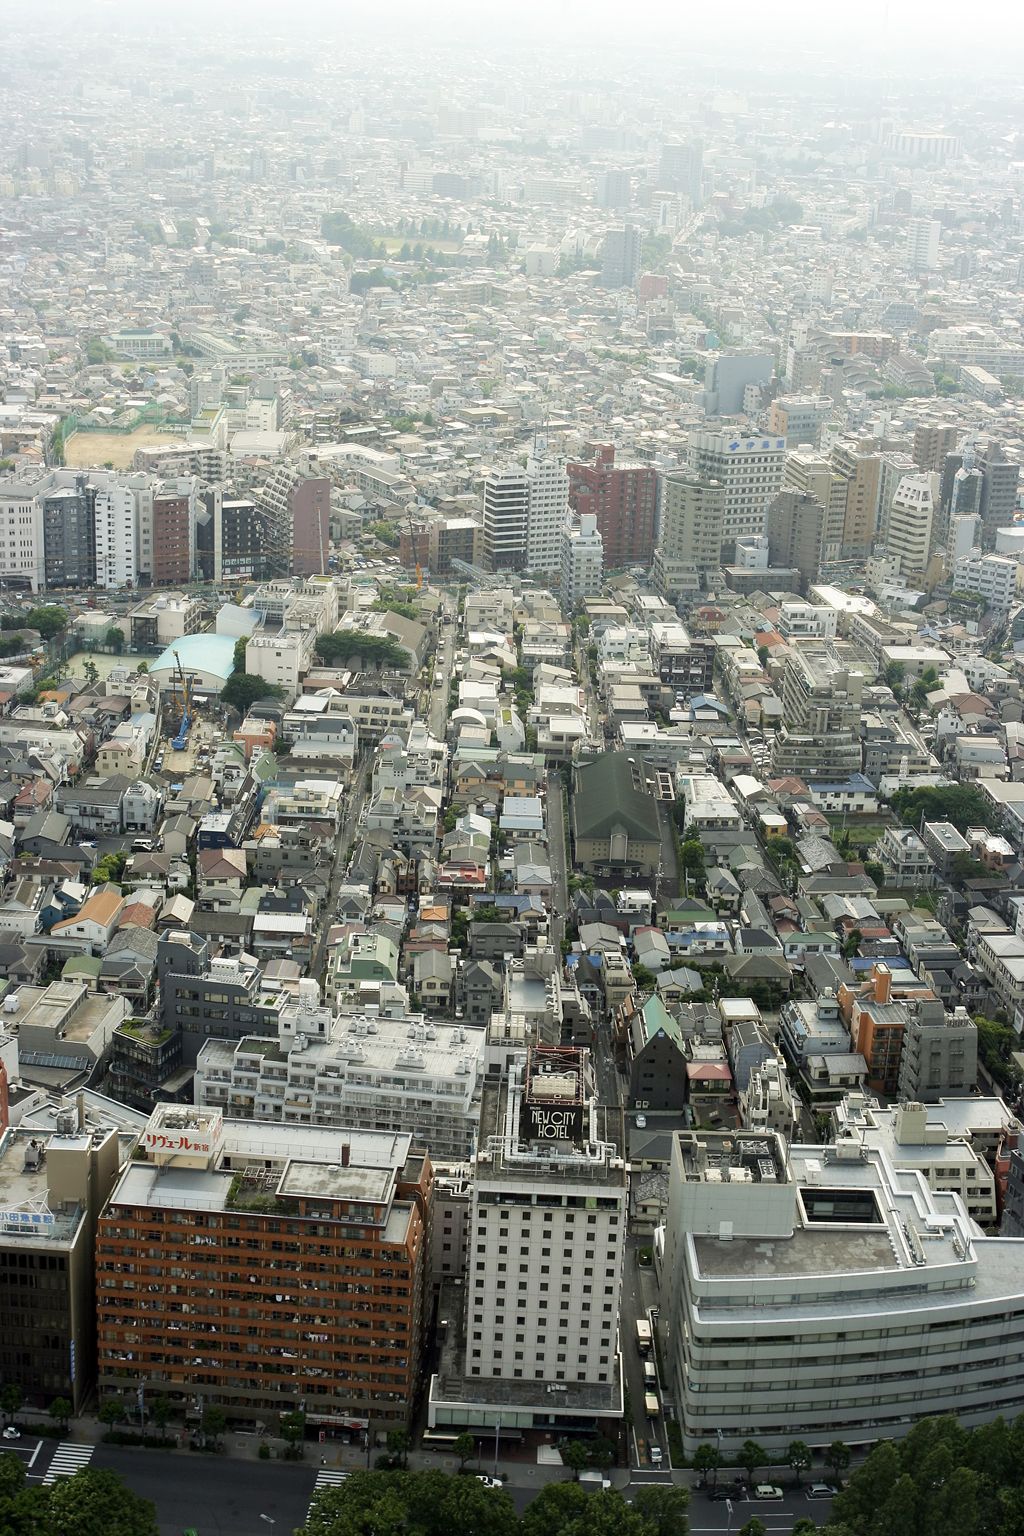 Foto: Podívejte se, jak smog zahaluje život ve městech - Japonsko